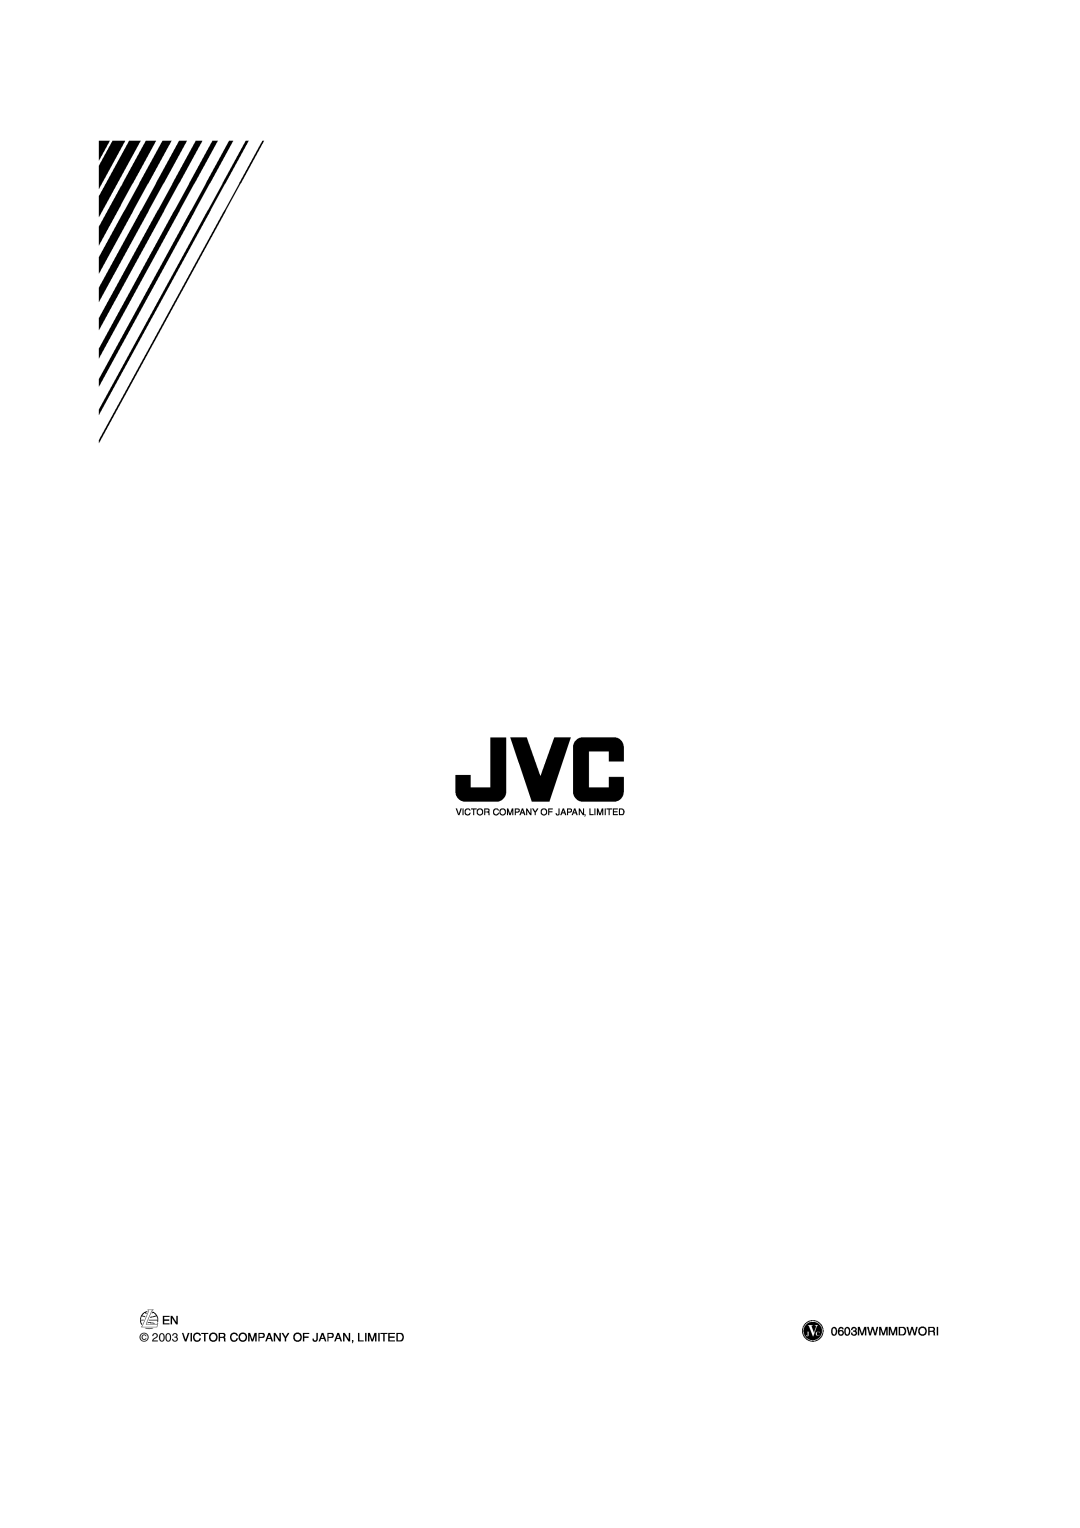 JVC FS-H10 manual 0603MWMMDWORI, Victor Company Of Japan, Limited 